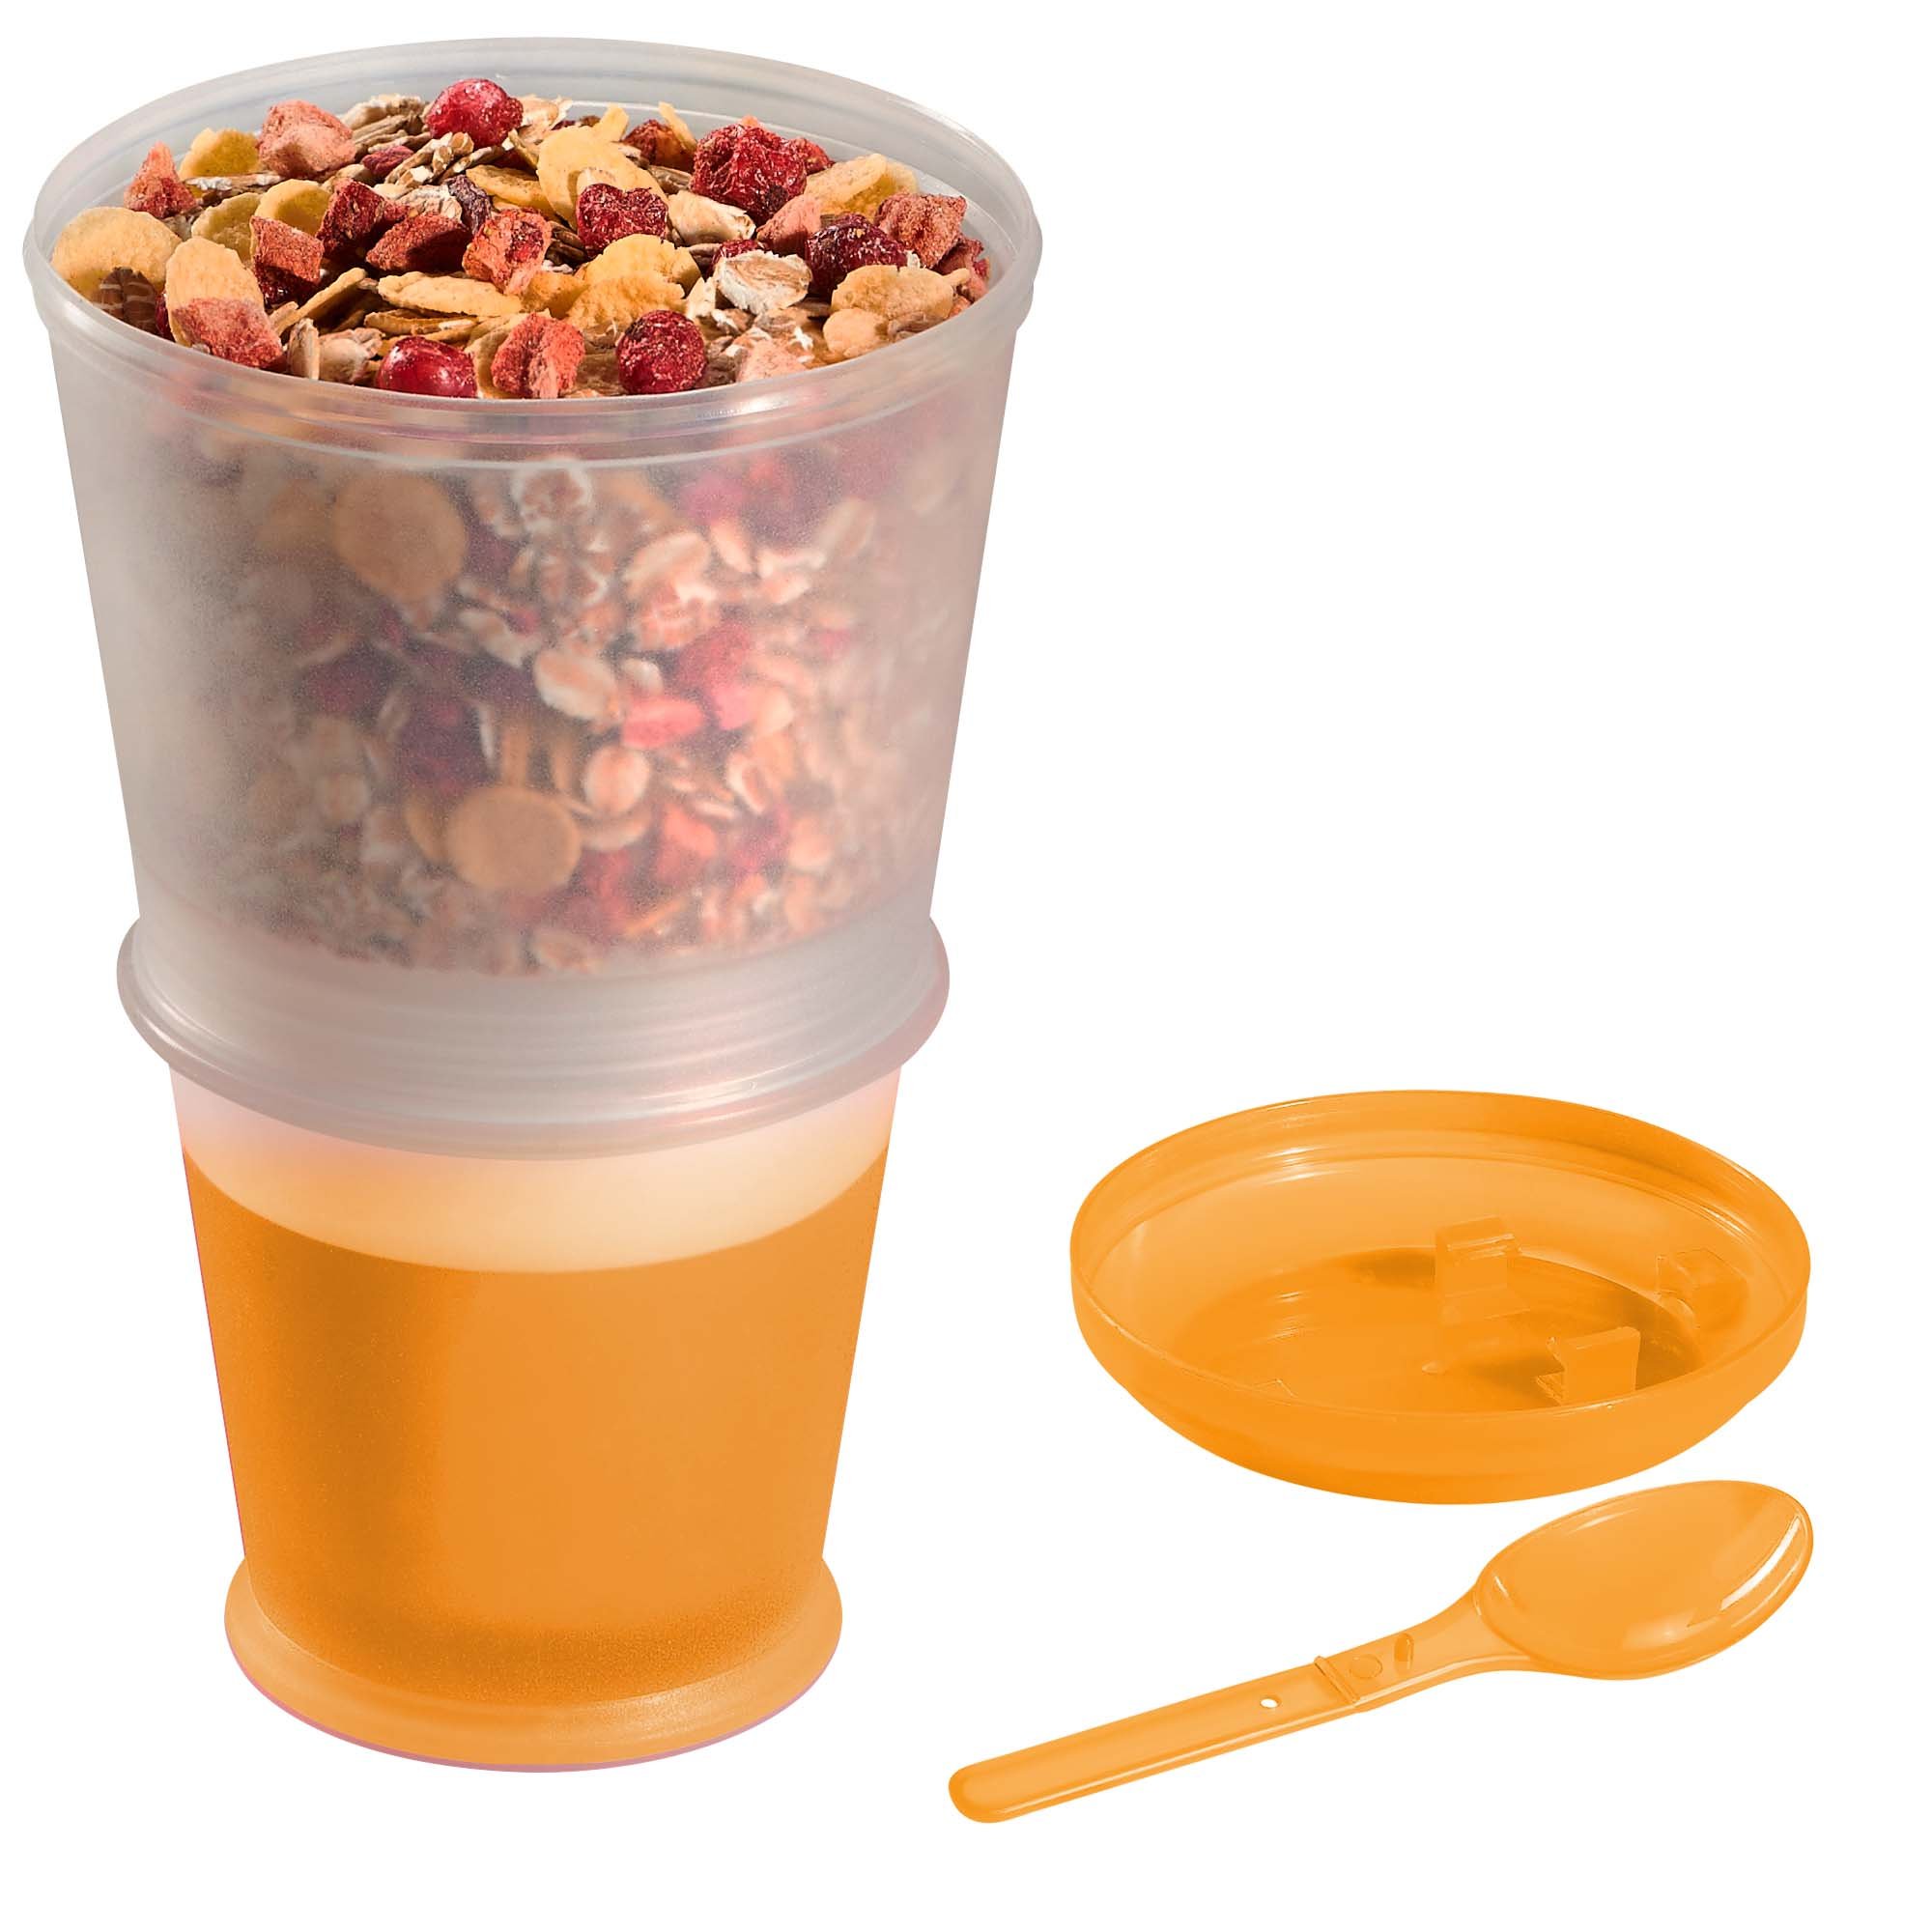 BELLA CUCINA Bicchiere per Cereali per Asporto, Vasetto refrigerante, Cucchiaio